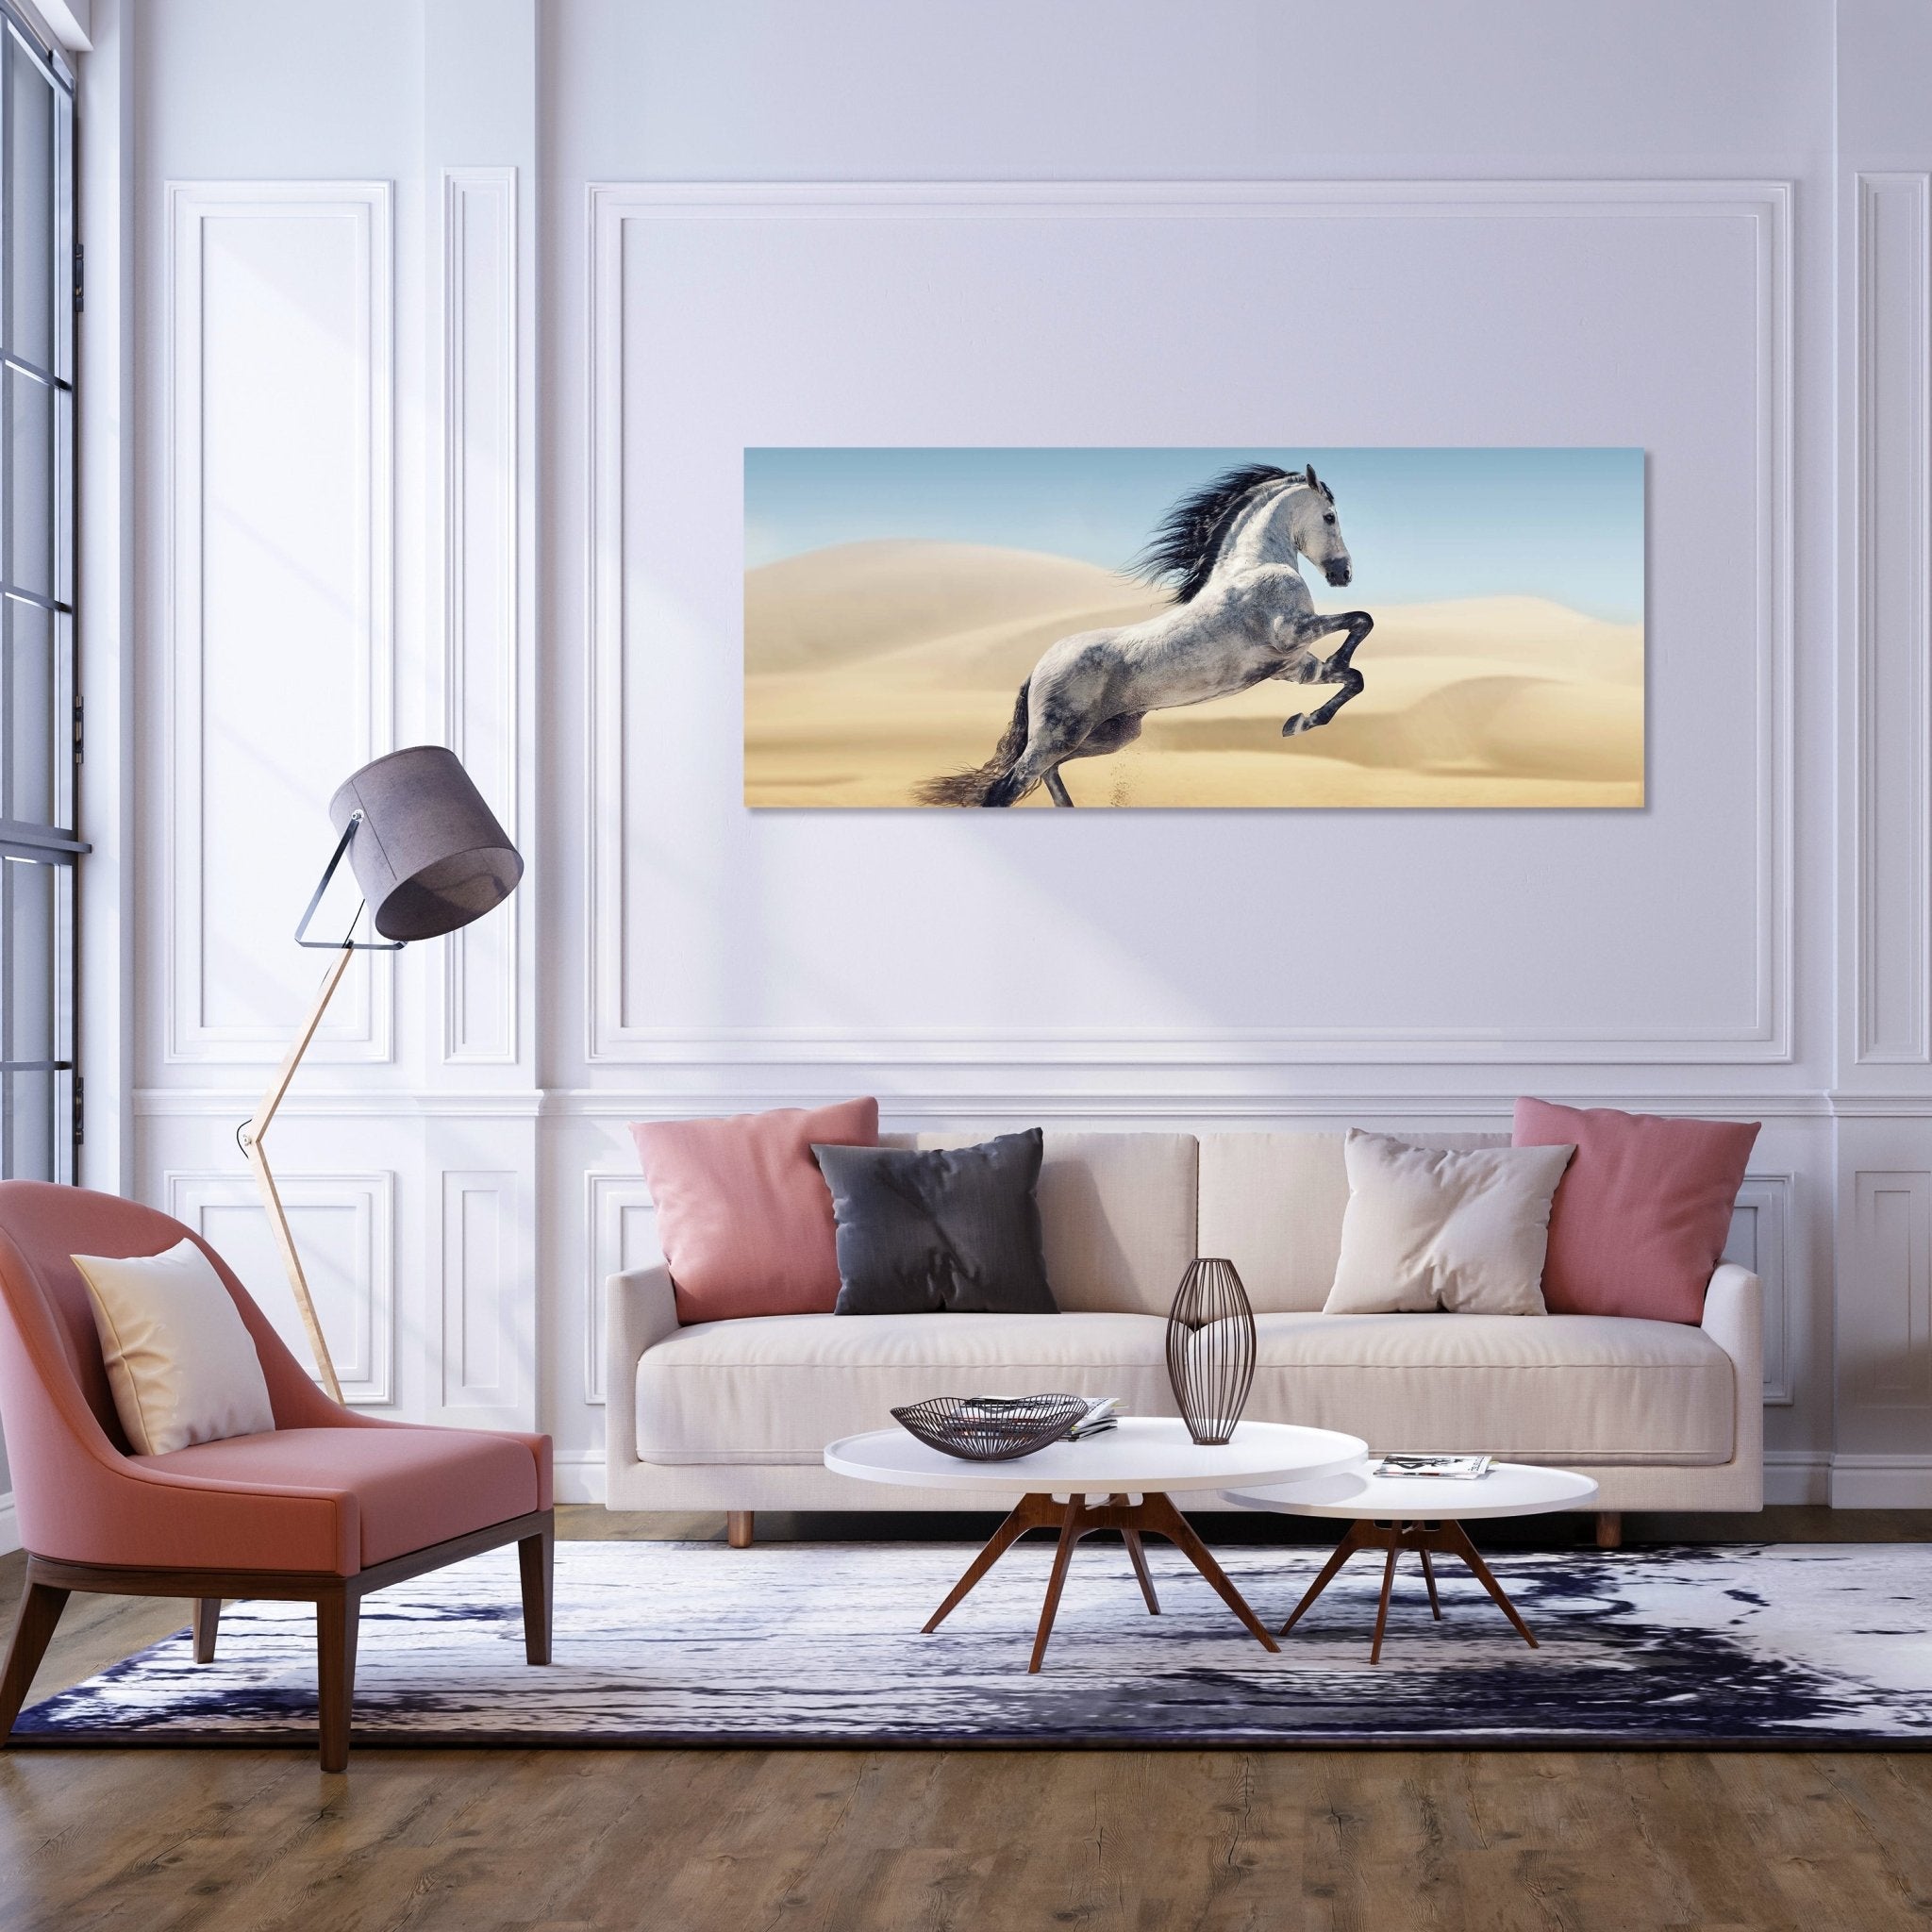 Leinwandbild Pferd, weiß, grau, Sand, Wüste M1110 kaufen - Bild 2